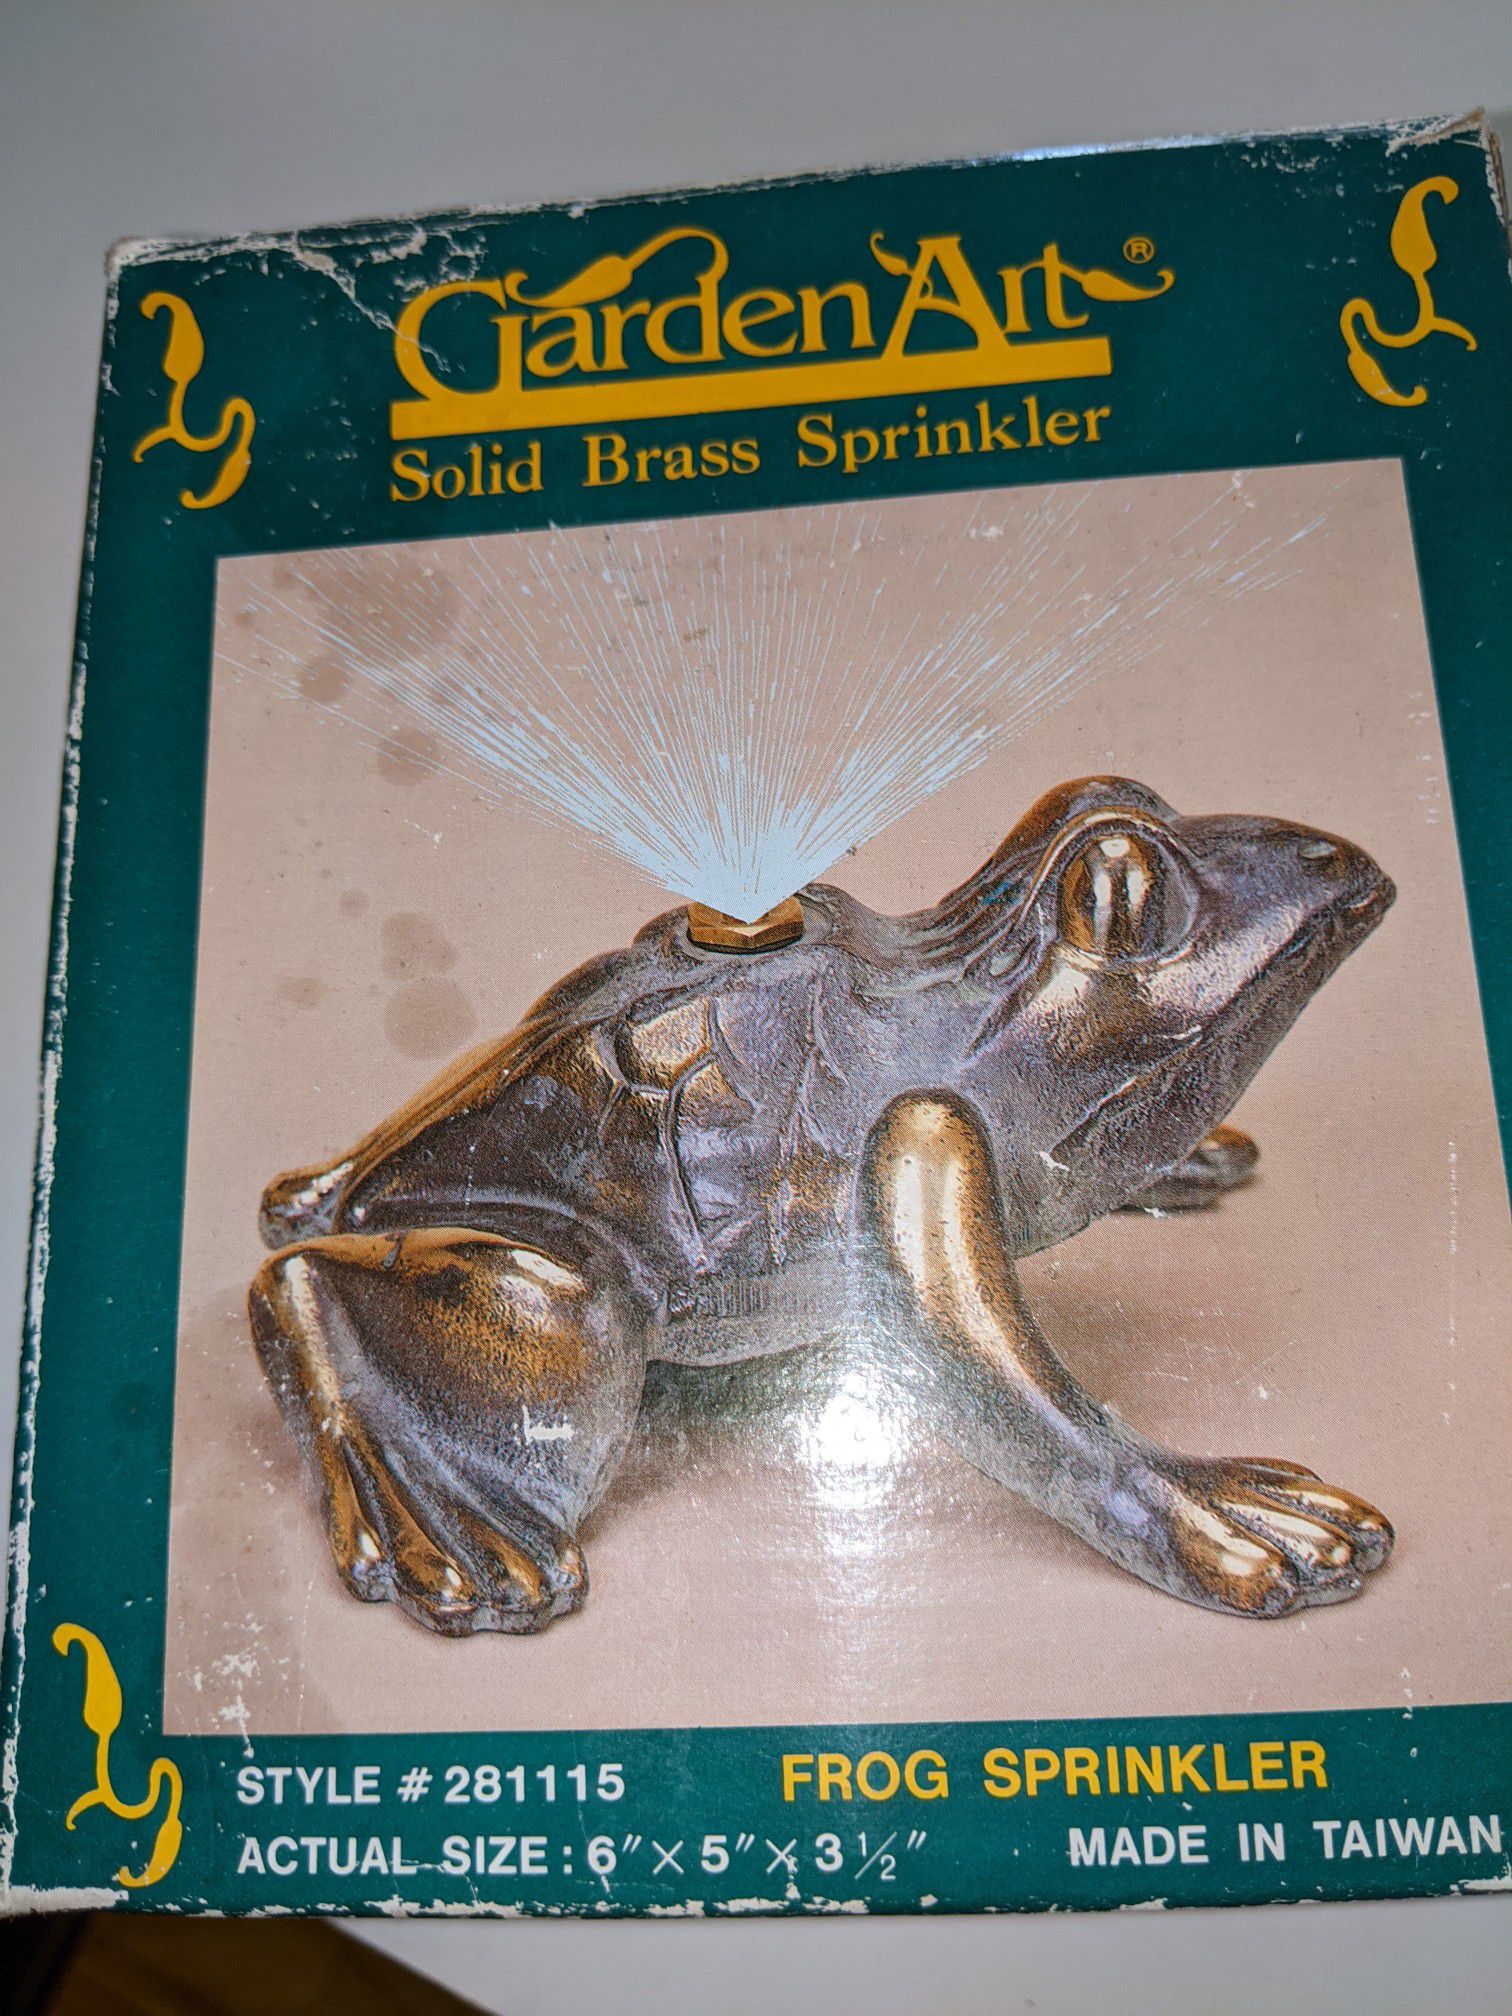 Vintage Garden Art solid brass frog sprinkler